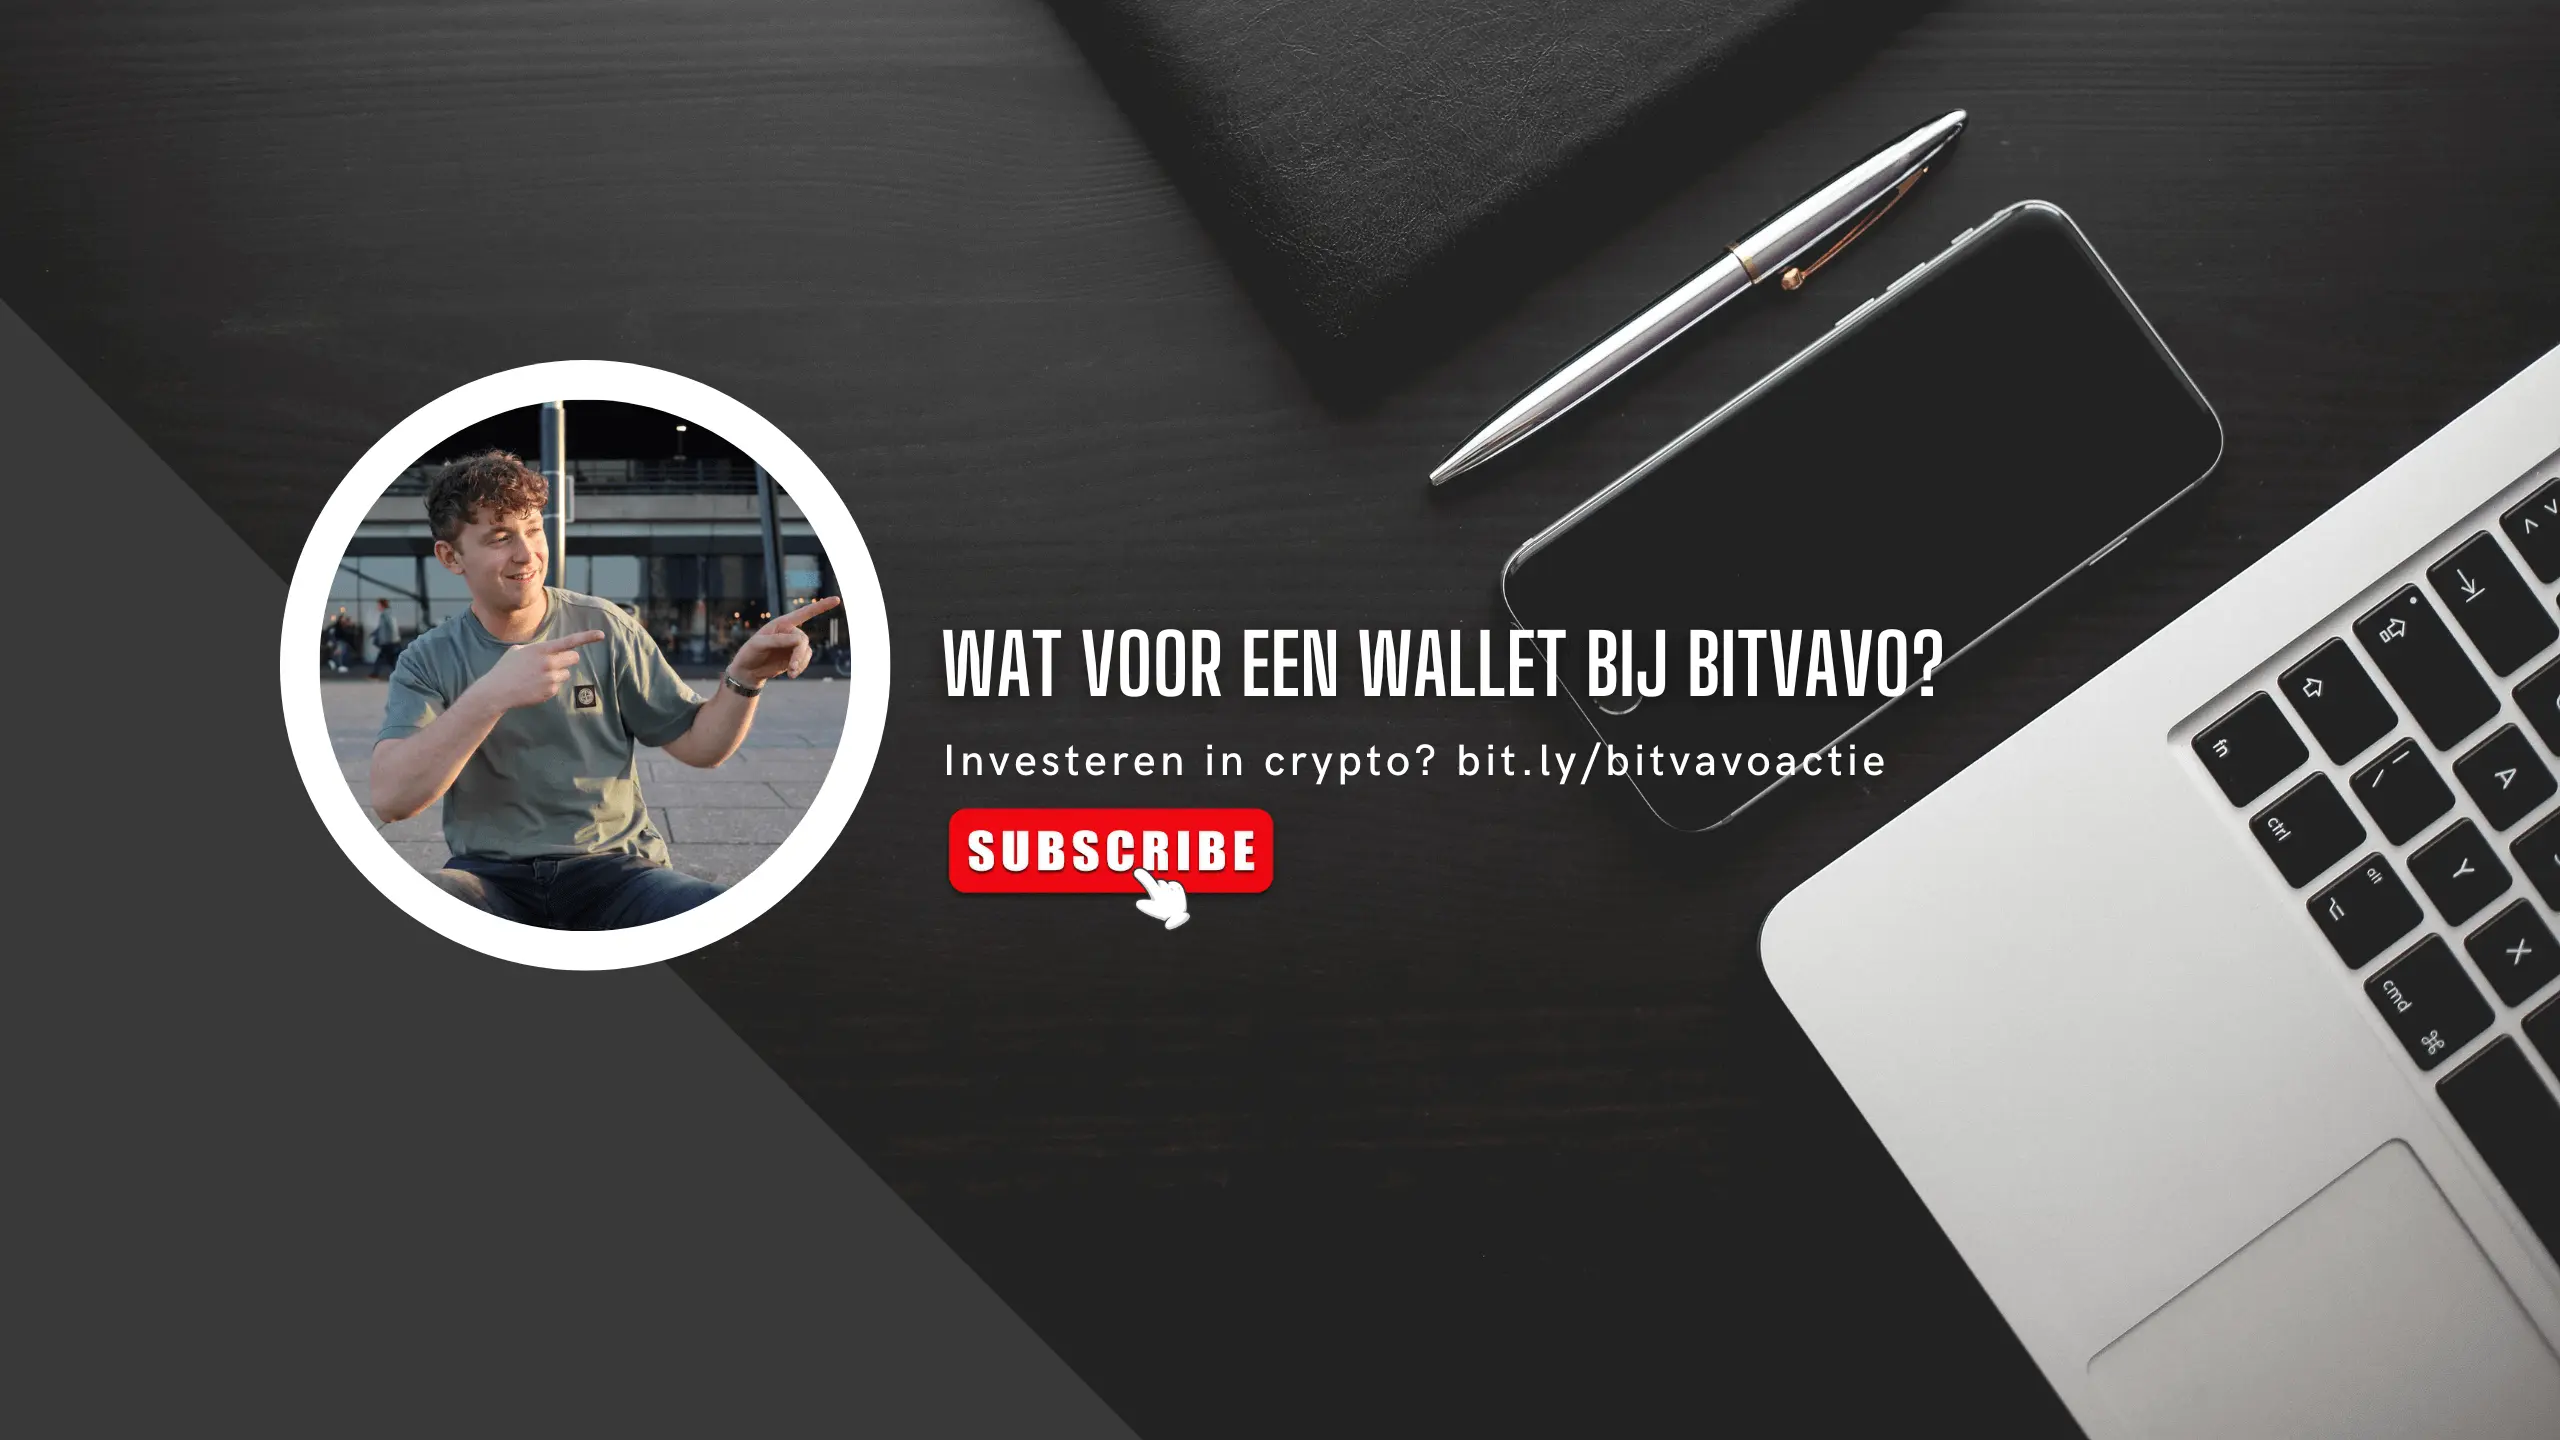 Wat voor een wallet heb je bij Bitvavo? 